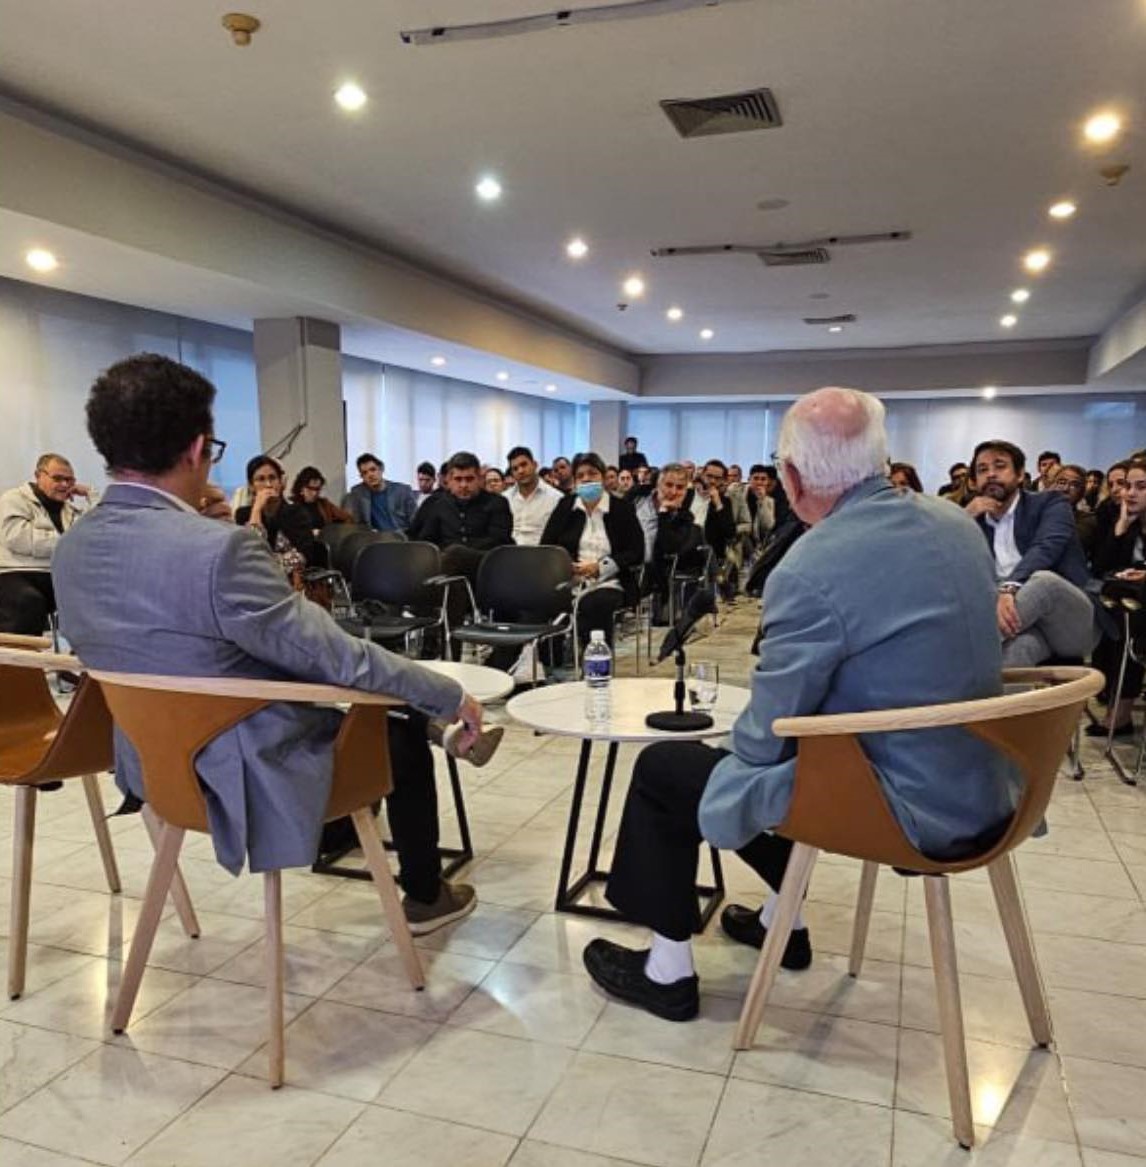 Entre los eventos organizados por AUGE estuvo Quorum, un encuentro entre líderes empresariales. Foto: AUGE/Facebook.